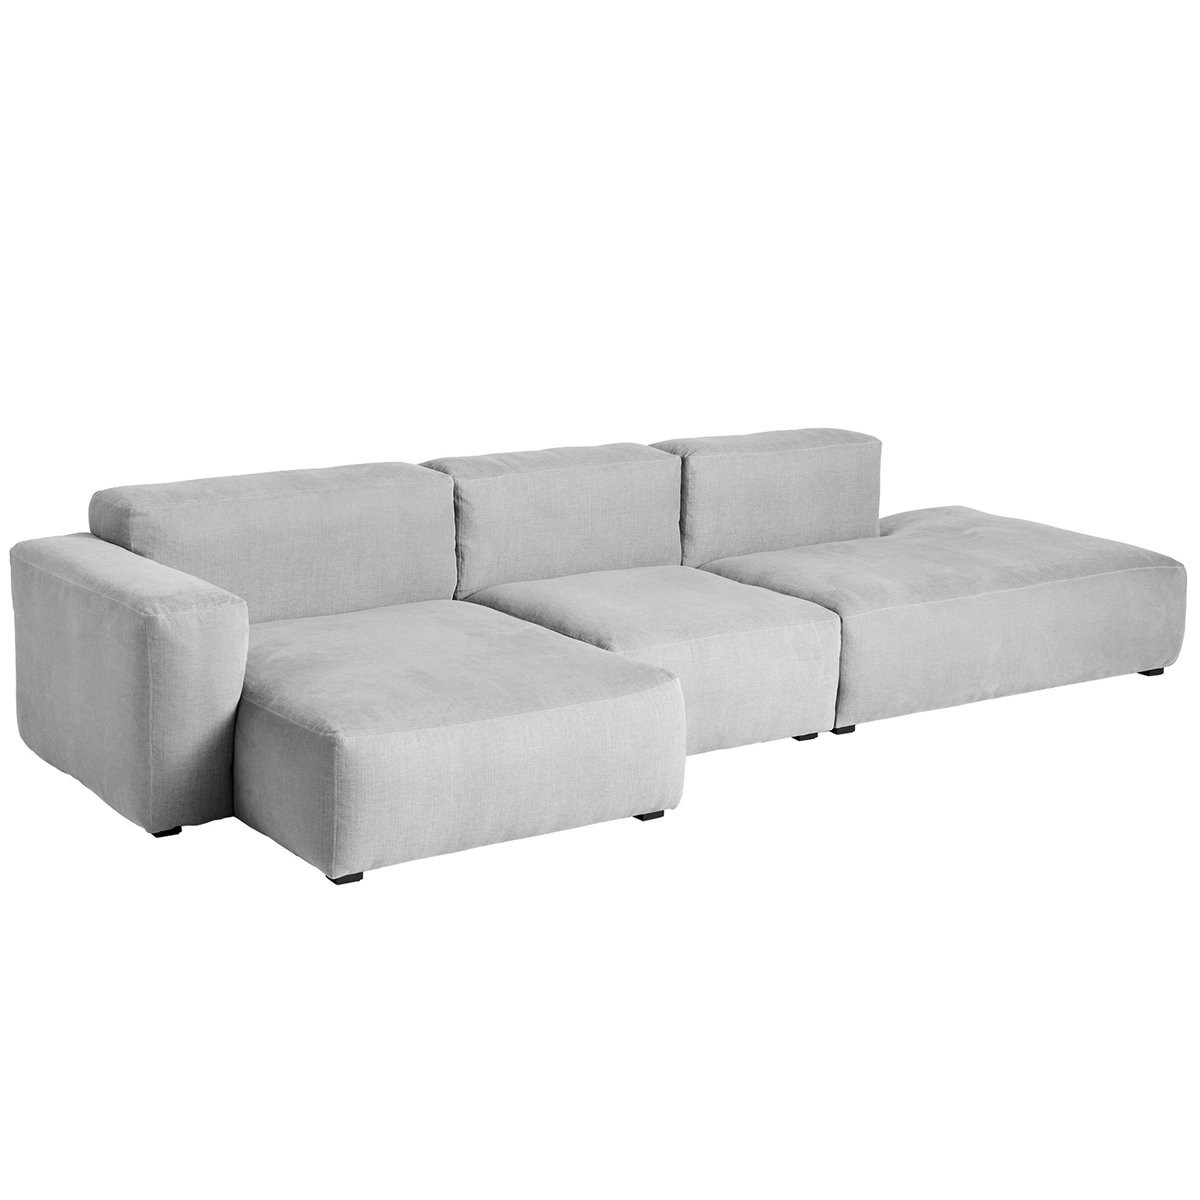 HAY Mags Soft sohva 331 cm, matala käsinoja vasen, Linara 443-v.harm